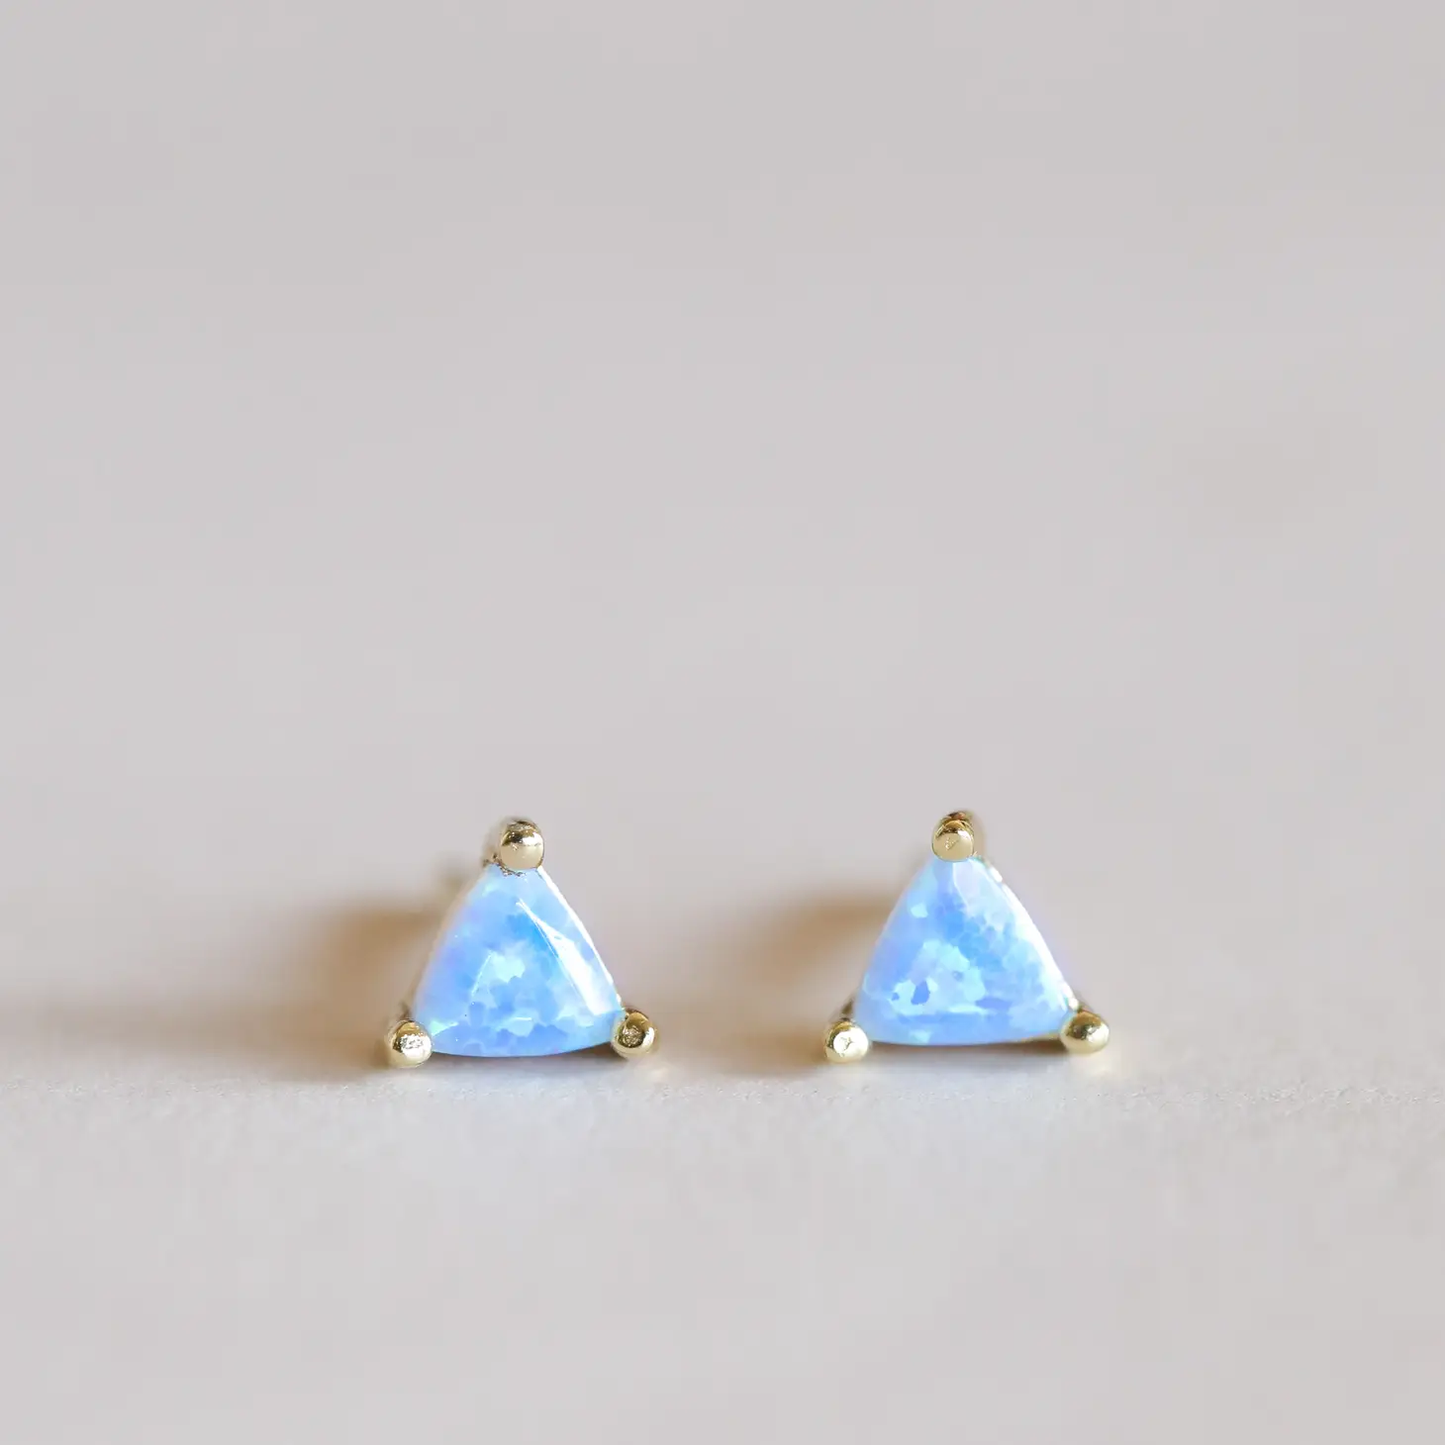 Mini Energy Earrings - Fire Opal